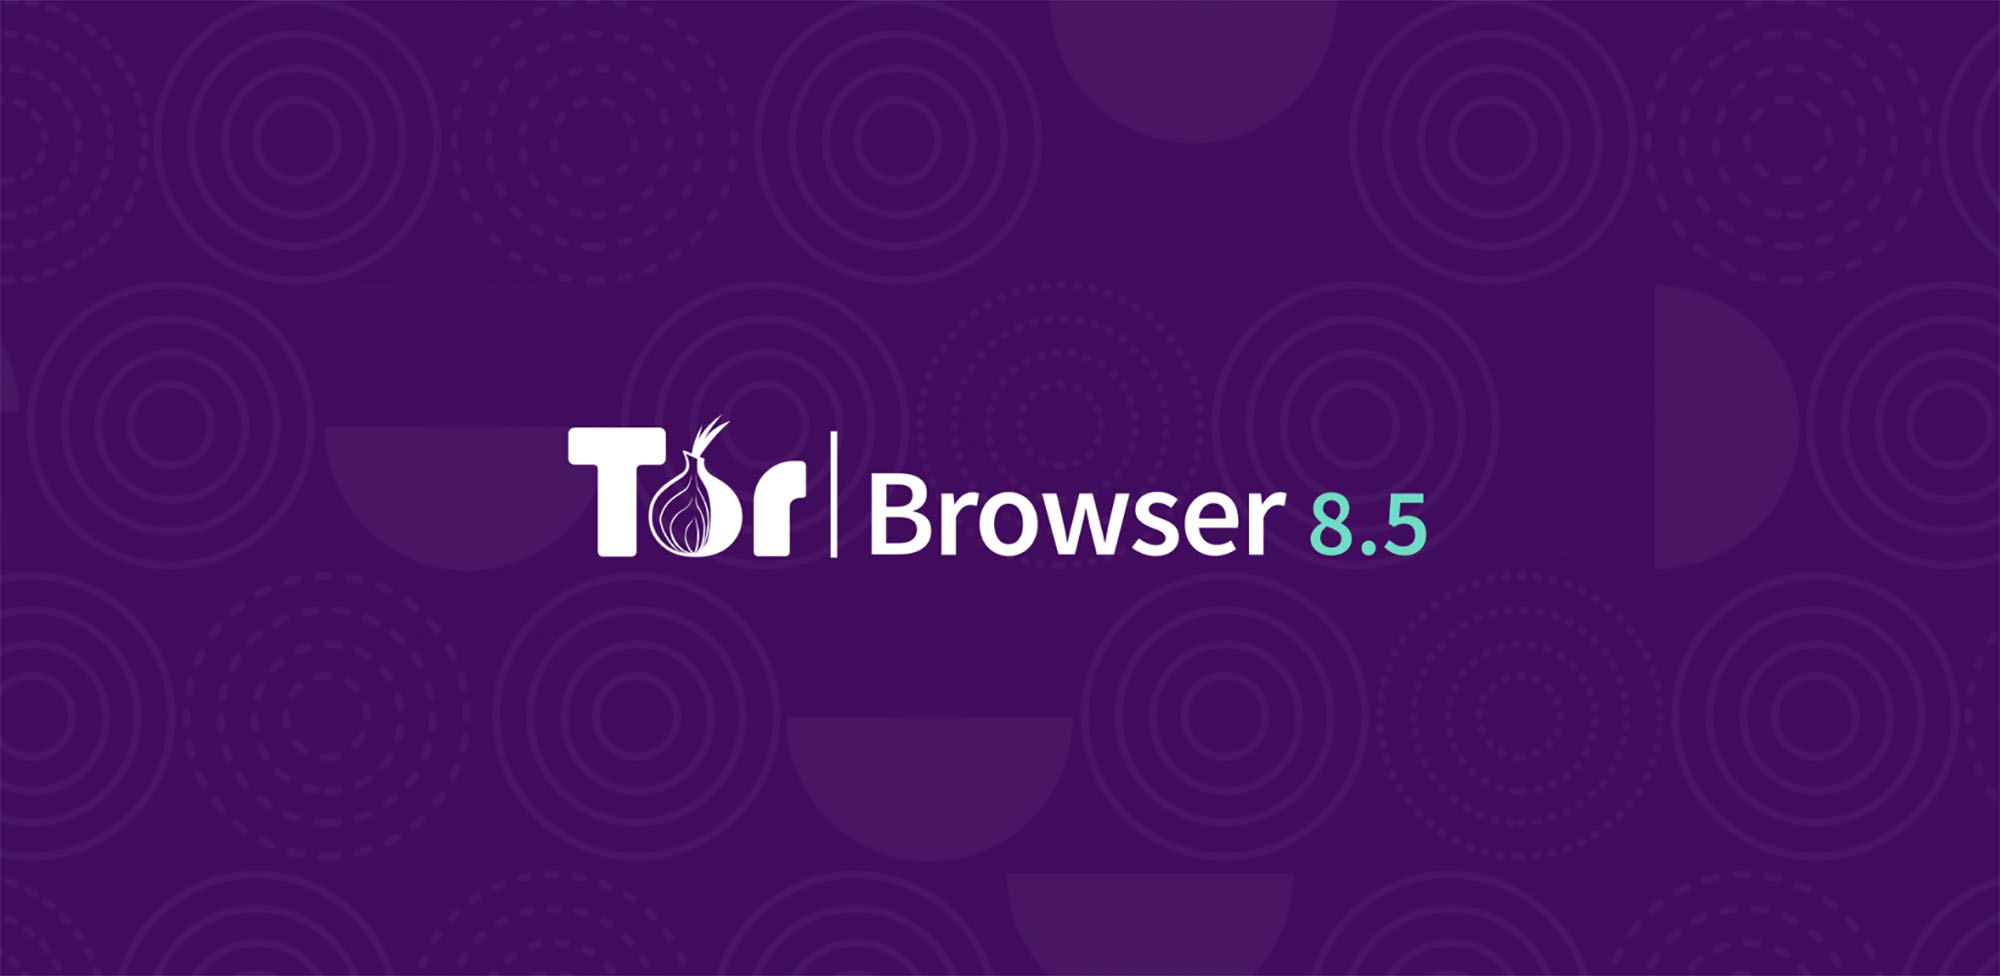 Start tor browser андроид mega tor browser download mac os x mega